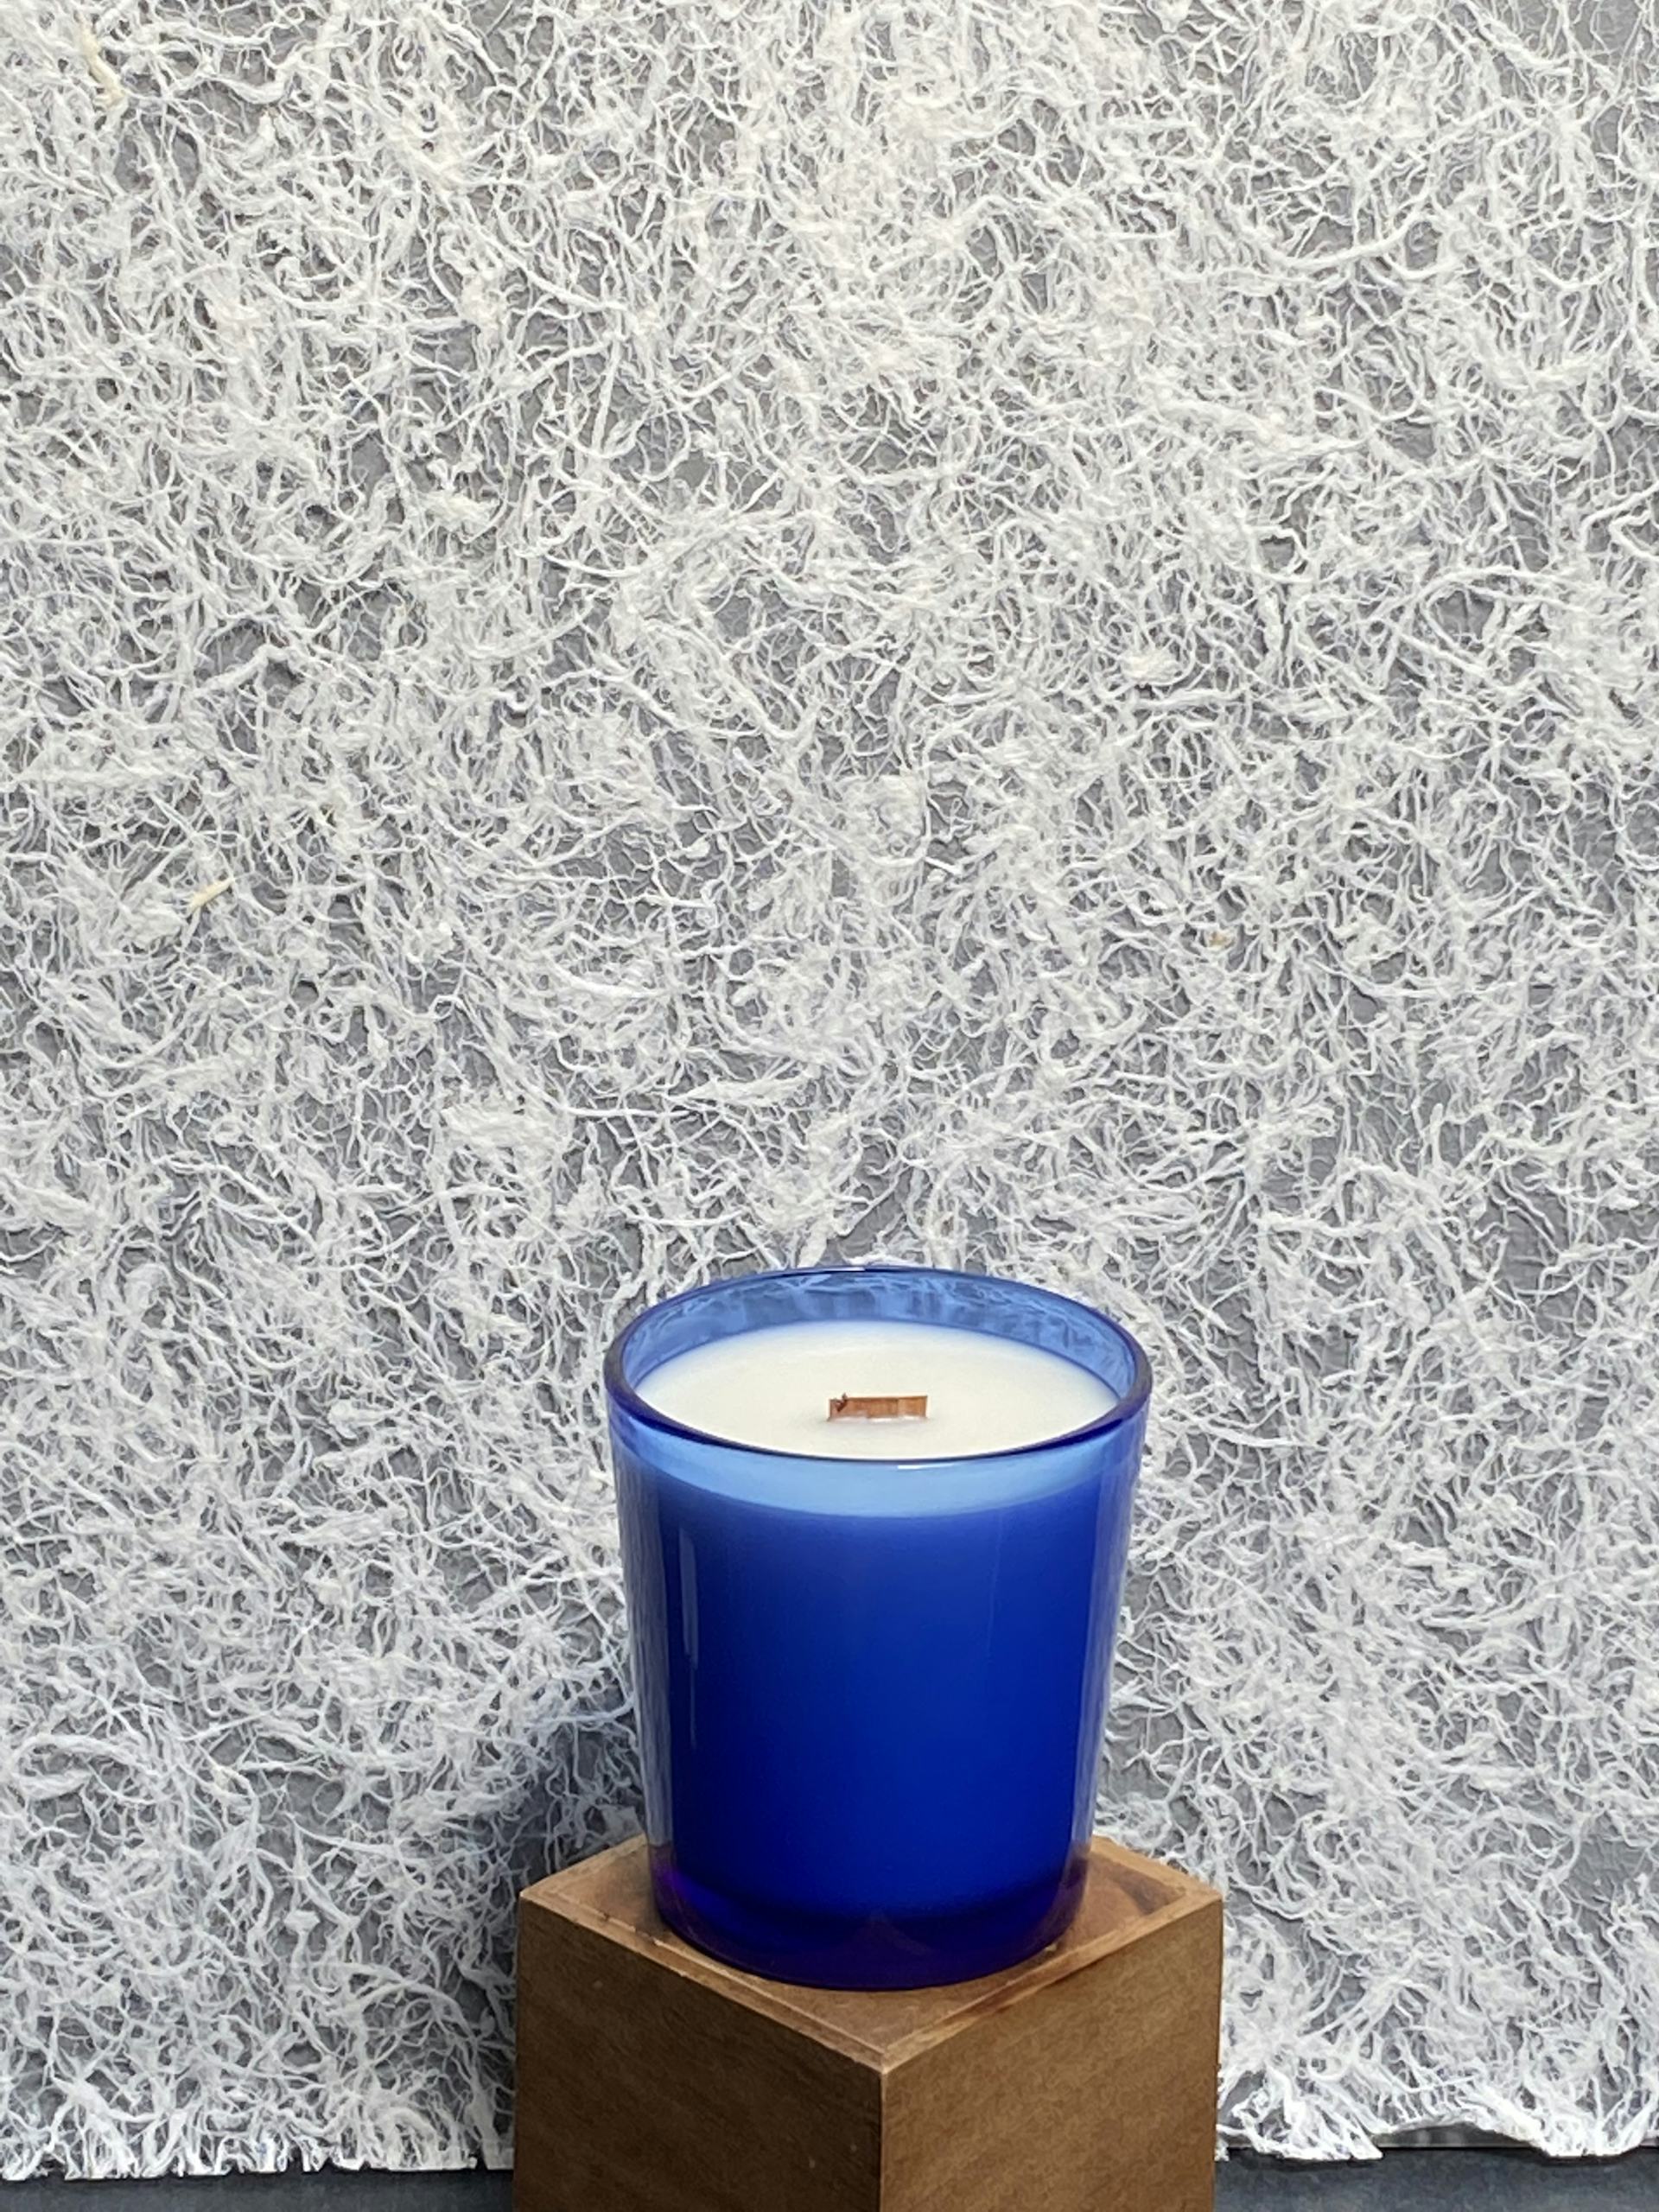 Product Image : Seasonal Summer Candle - Large